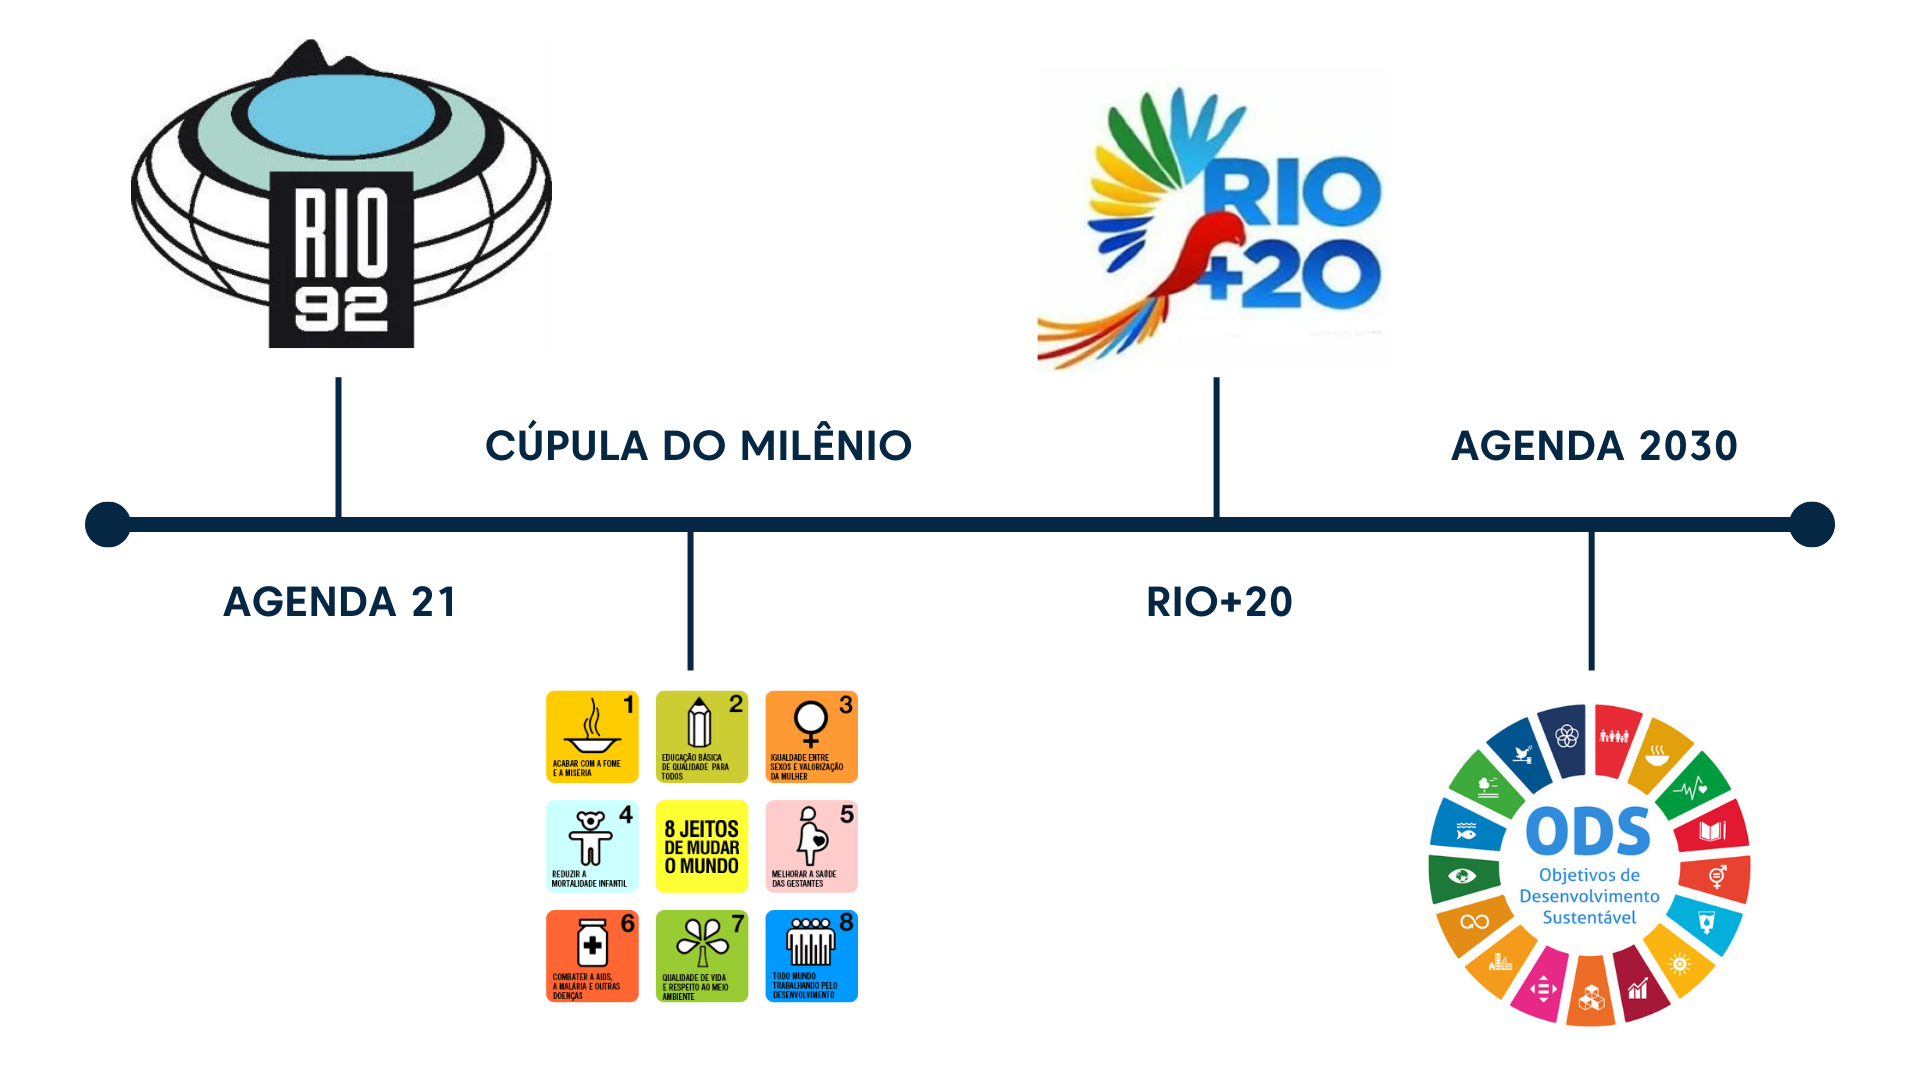 Linha do tempo desde a Agenda 21 até a Agenda 2030